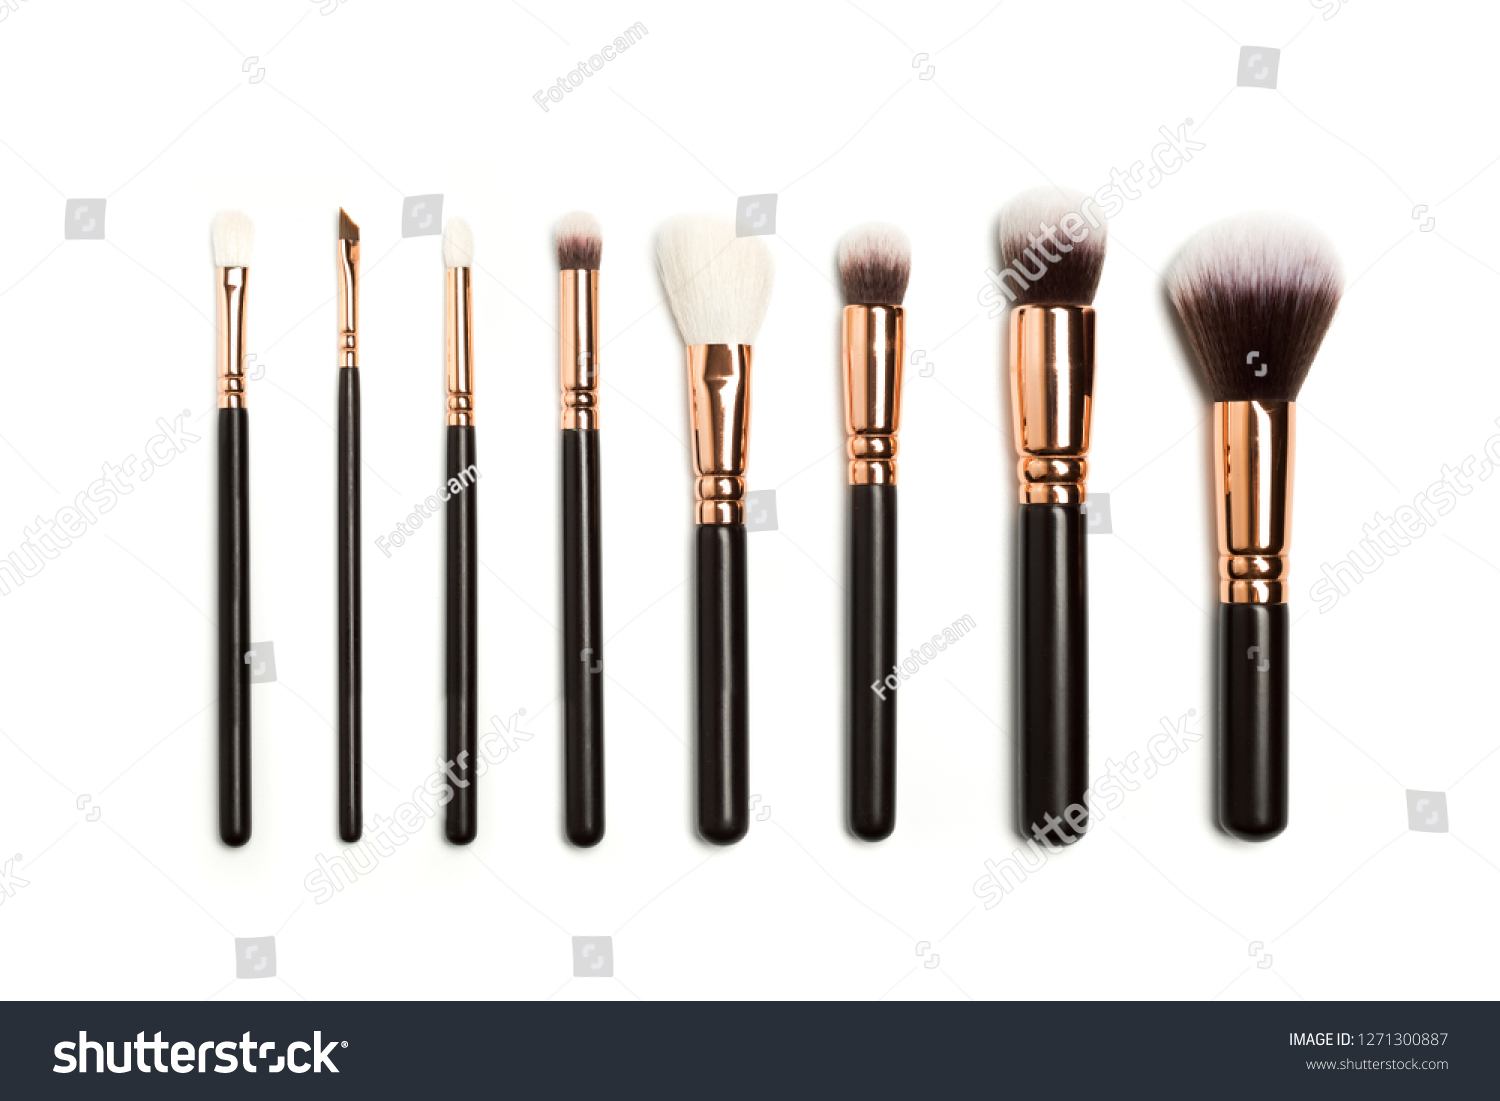 Set of brushes for powder. Powder brush set. Cosmetic brush. Cosmetic product. Powder brush over white background. Cosmetic set. Make up brushes. Make up set. Isolated brushes on white background #1271300887